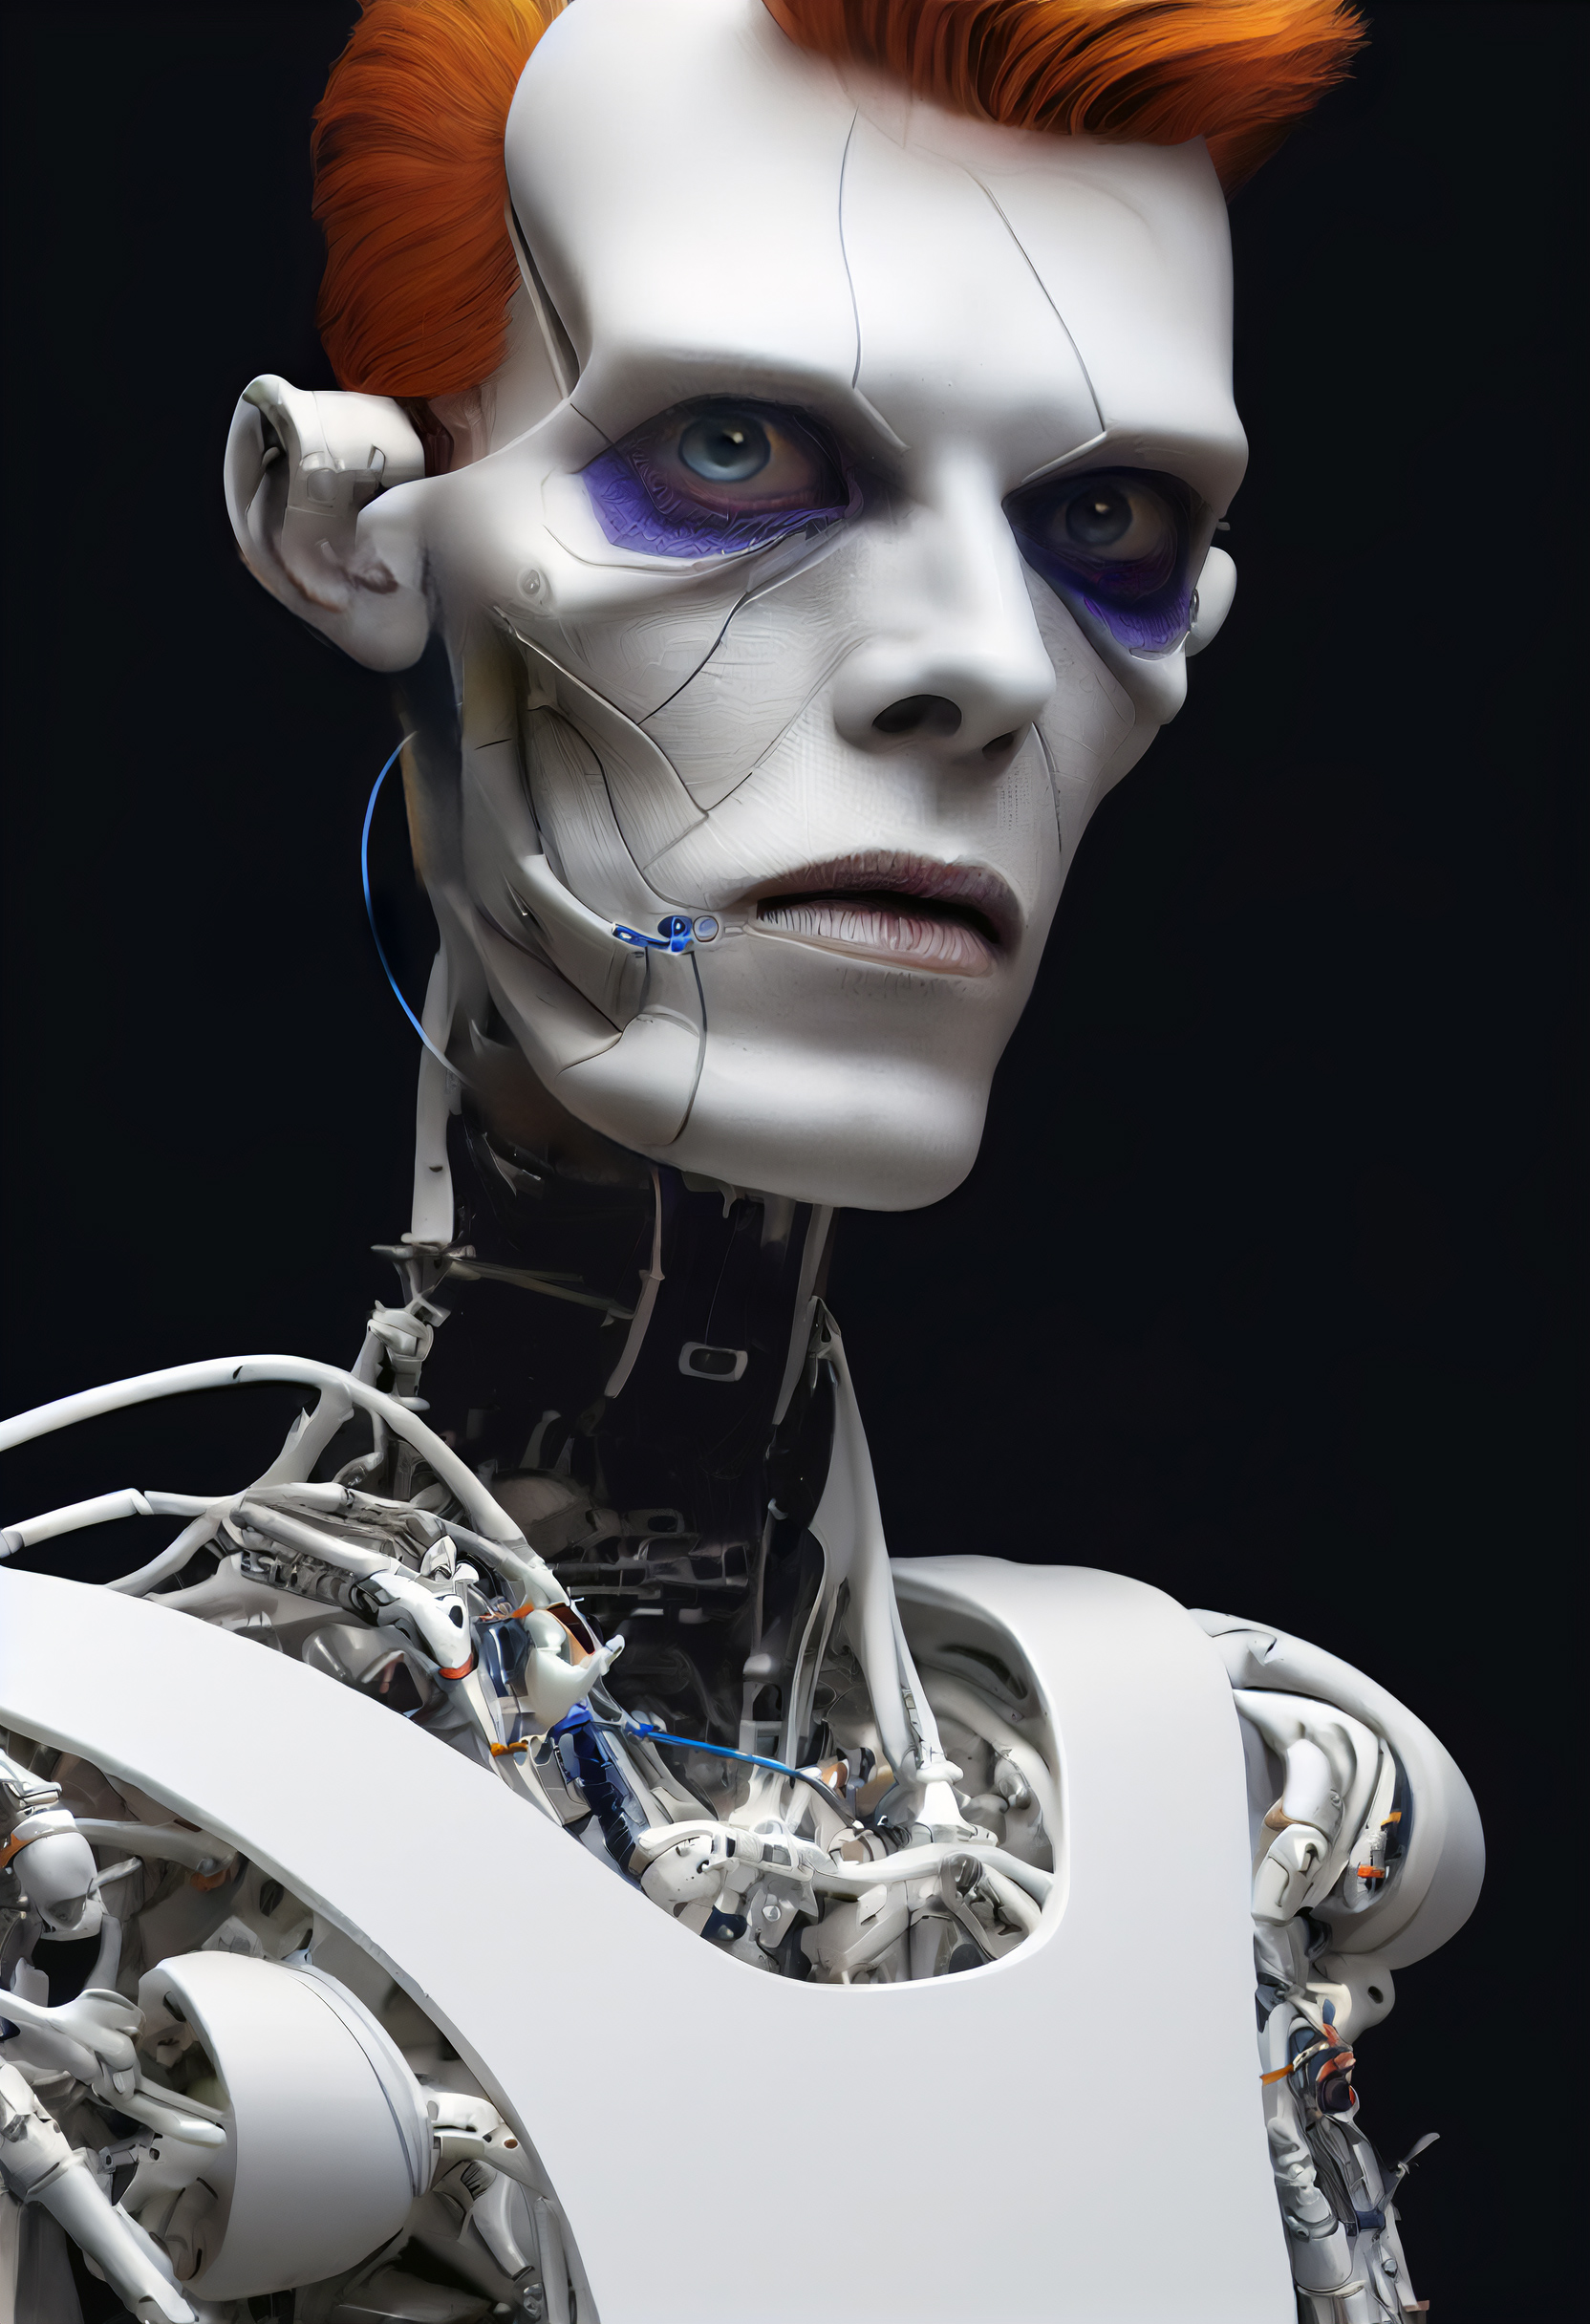 David Bowie Cyborg #15